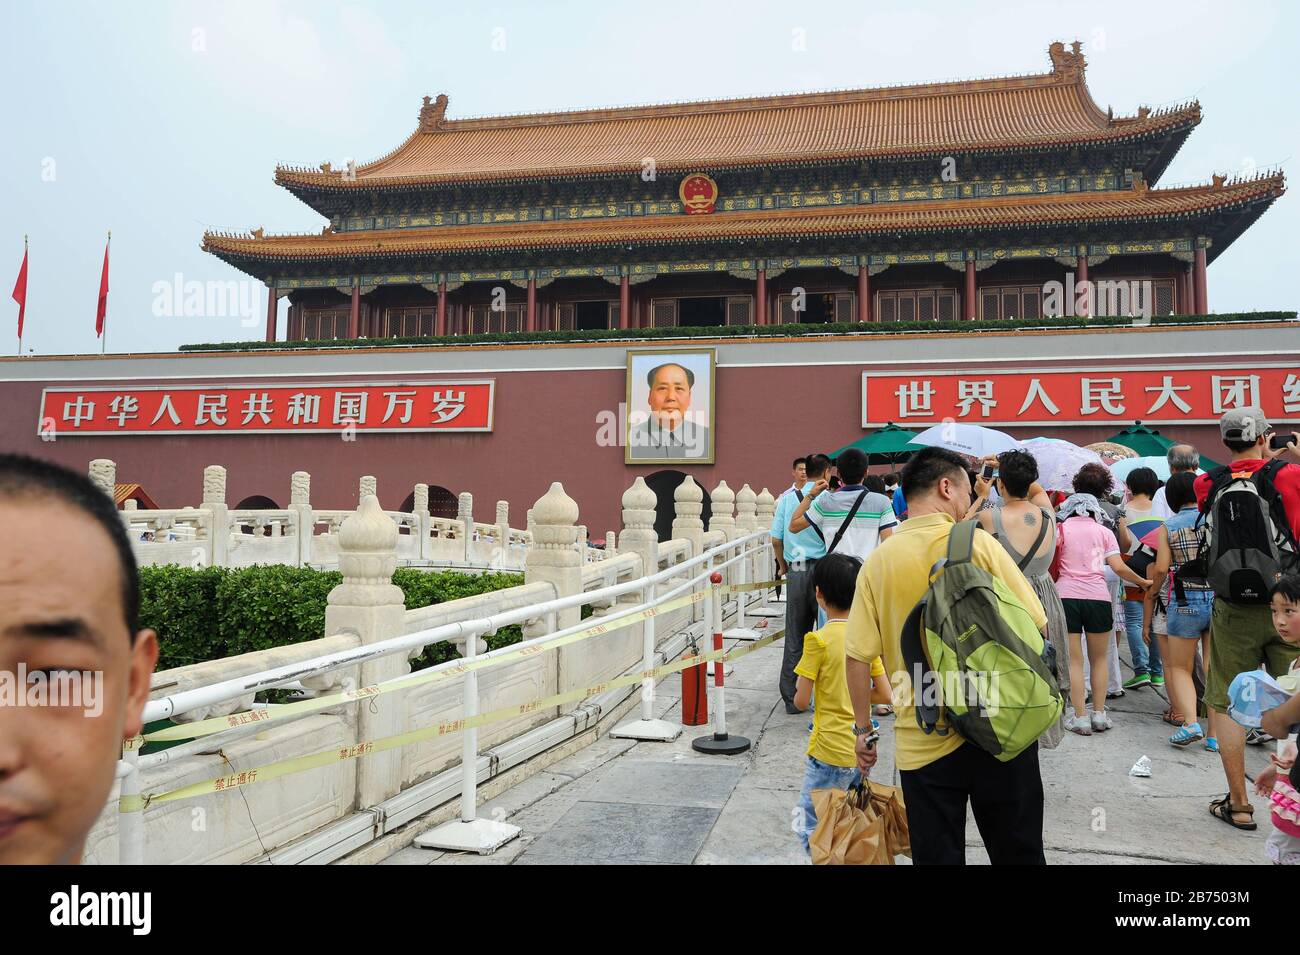 06.08.2012, Peking, China - Touristen vor der Verbotenen Stadt am Tiananmen-Platz mit einem Porträt des Vorsitzenden Mao über dem Eingang. [Automatisierte Übersetzung] Stockfoto